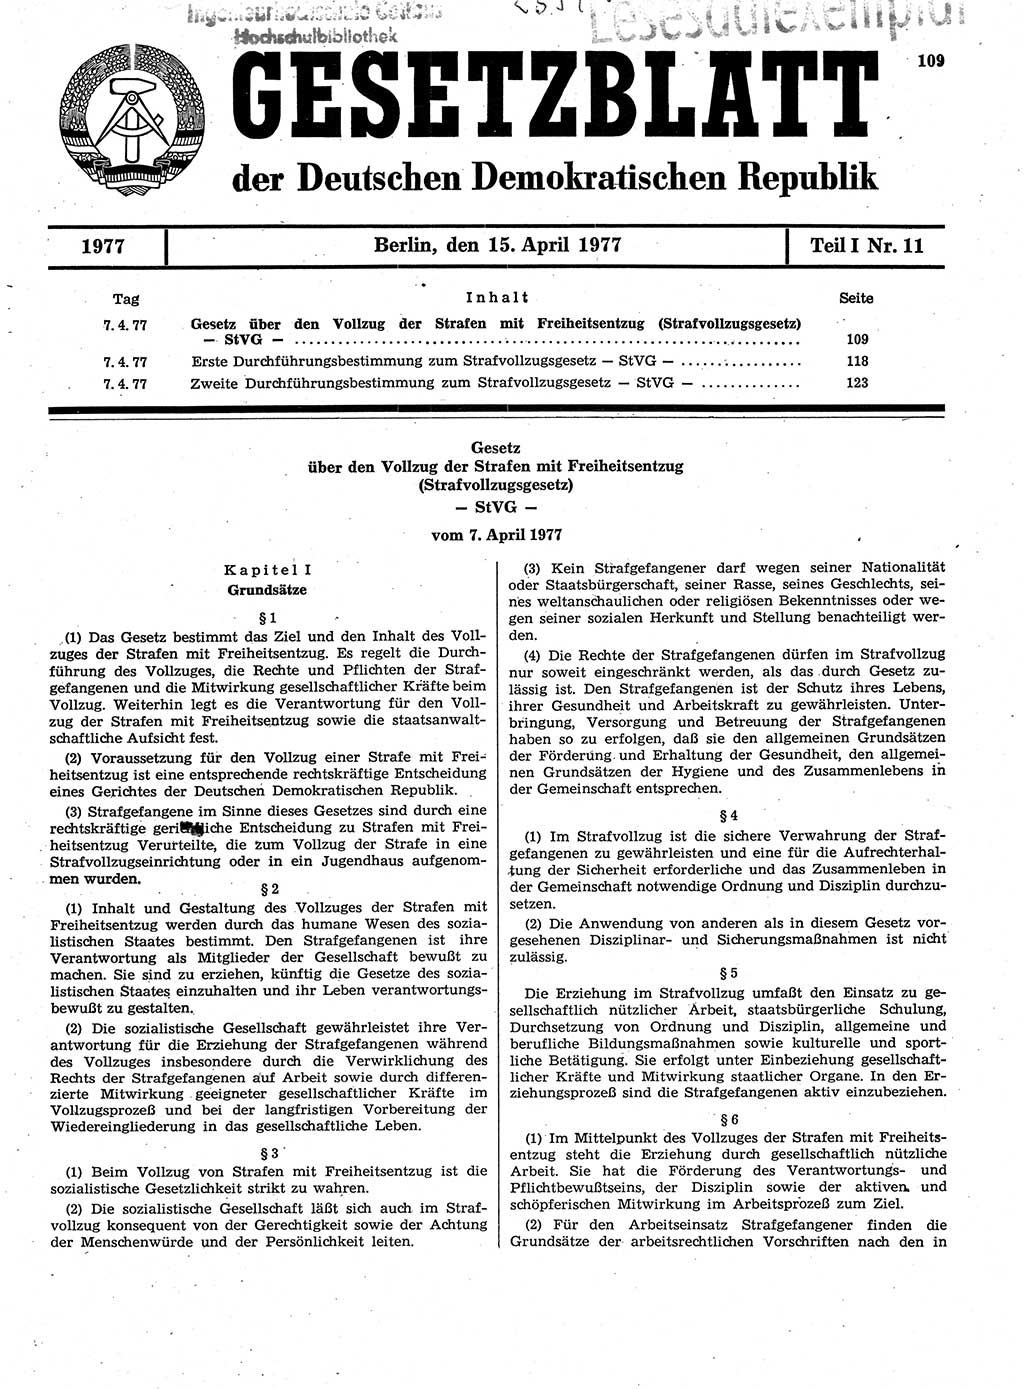 Gesetzblatt (GBl.) der Deutschen Demokratischen Republik (DDR) Teil Ⅰ 1977, Seite 109 (GBl. DDR Ⅰ 1977, S. 109)